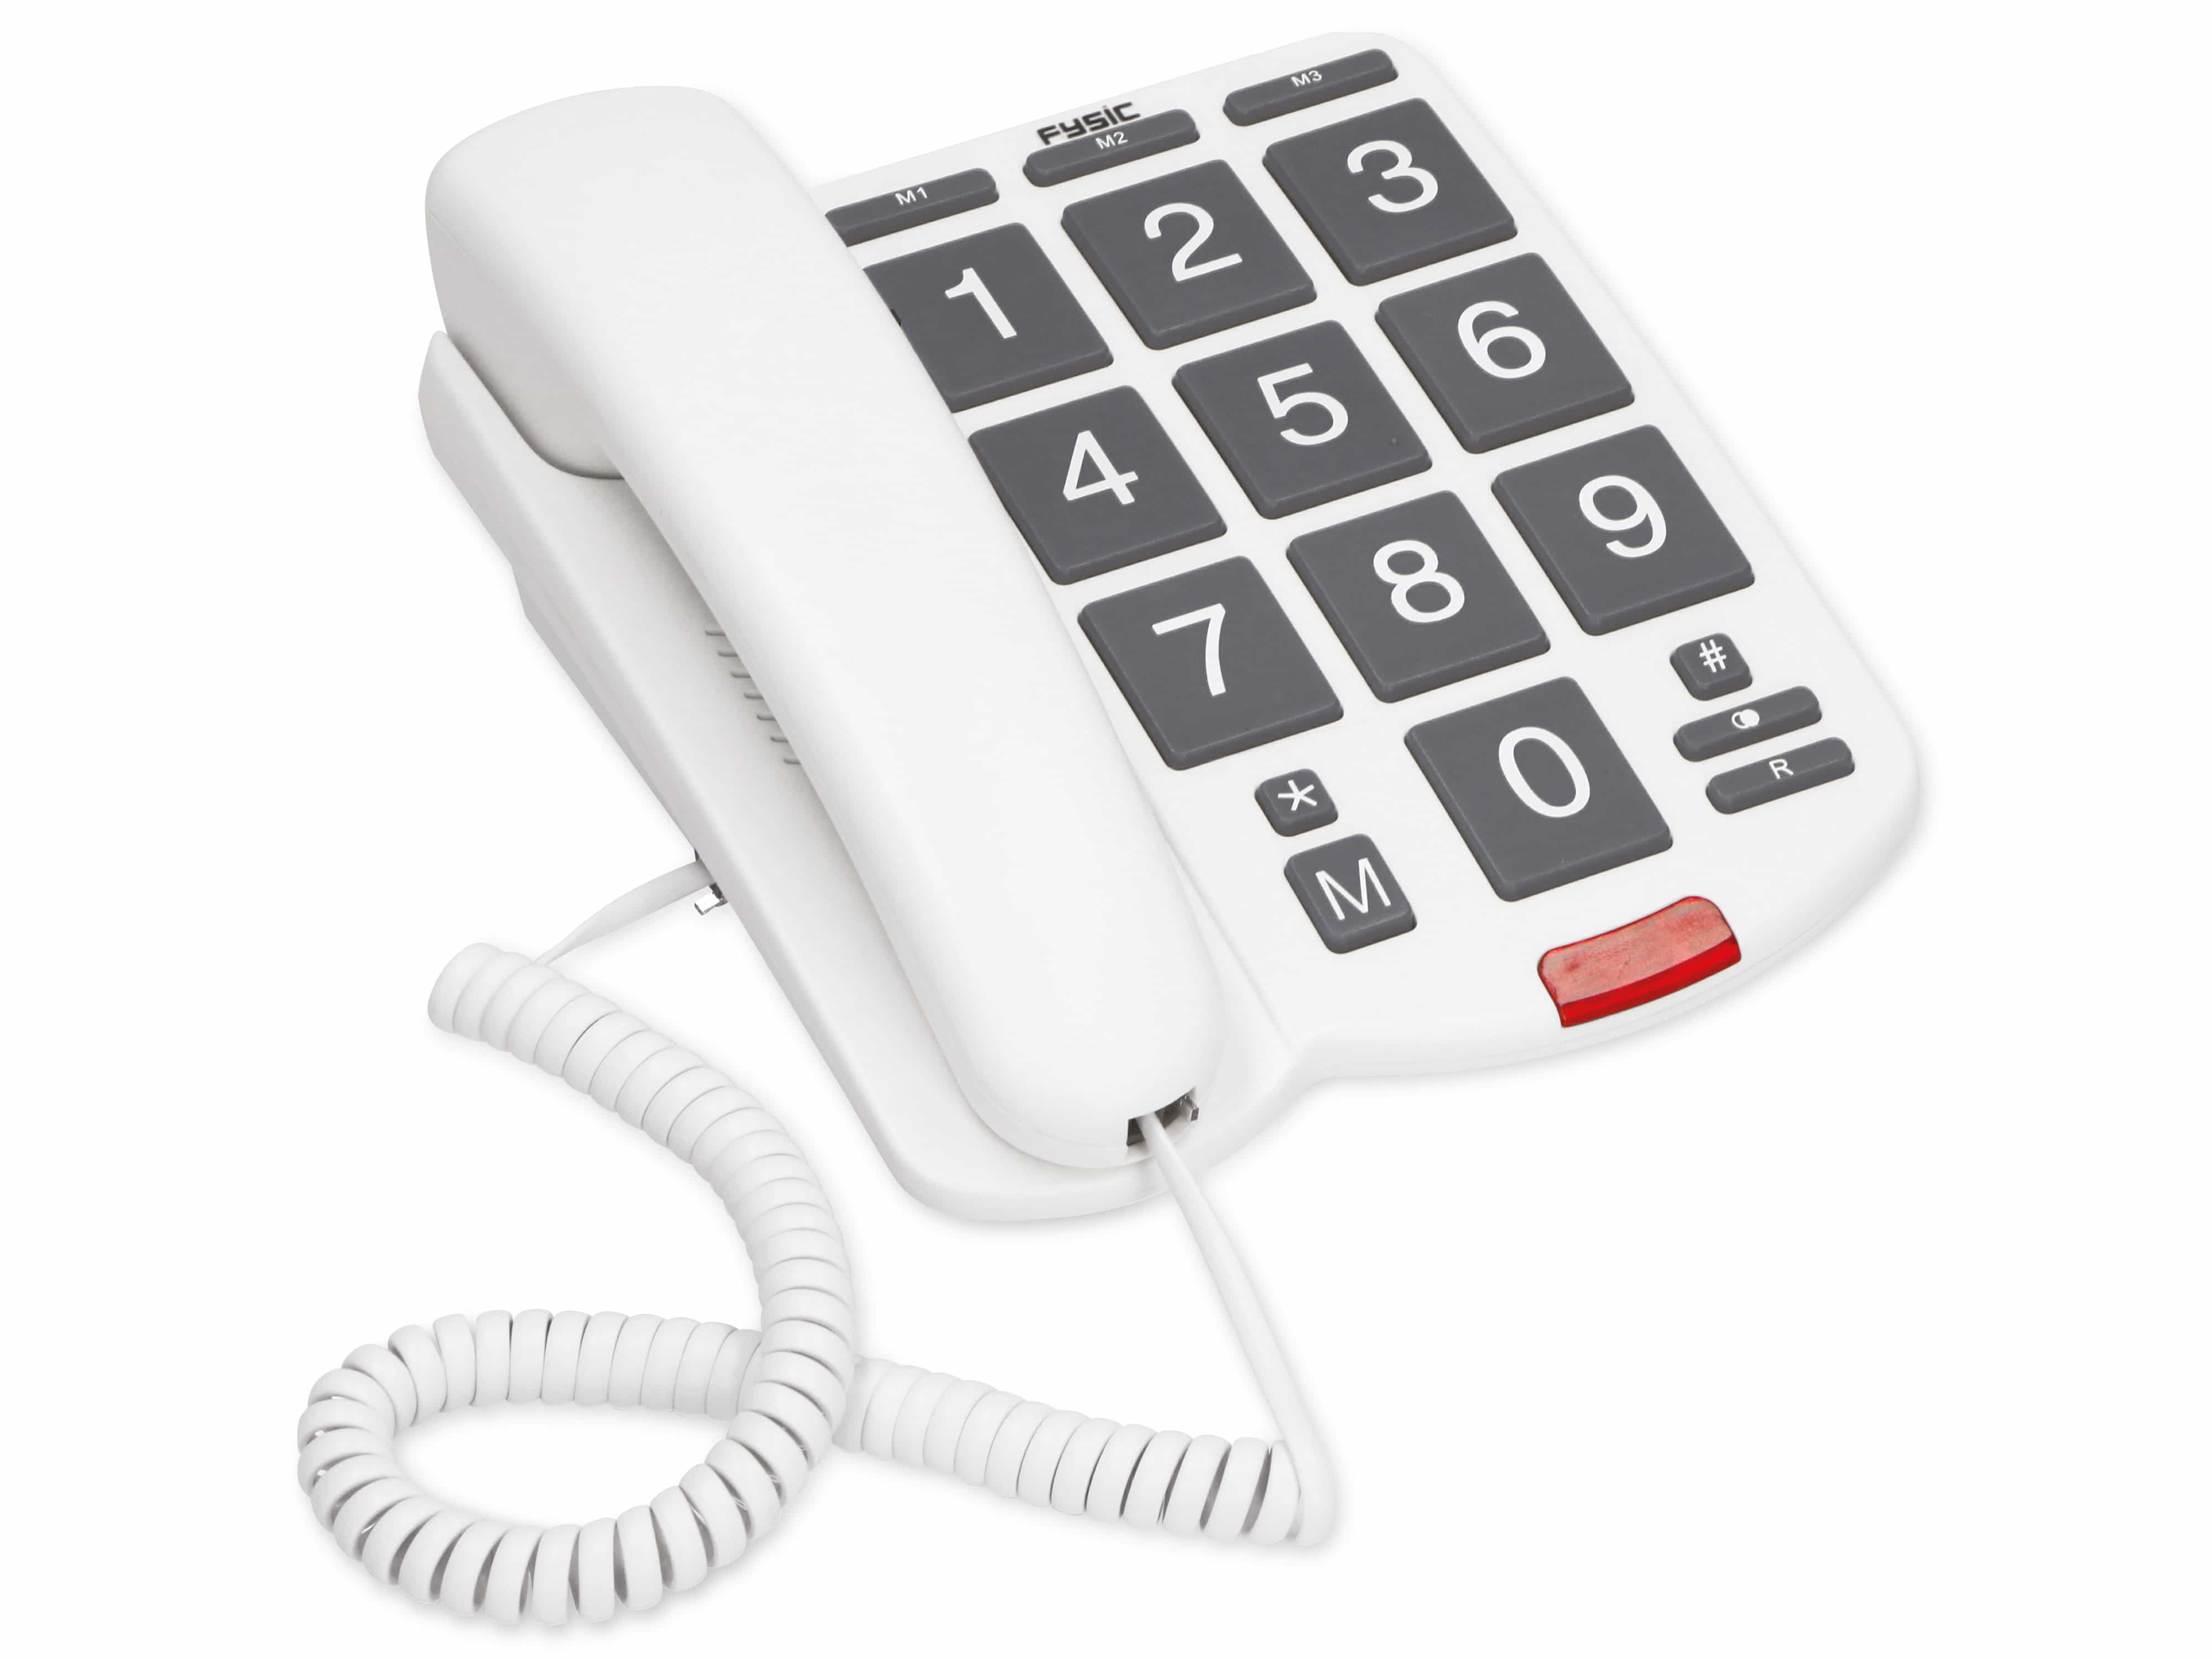 FYSIC Großtasten-Telefon FX575, weiß/grau